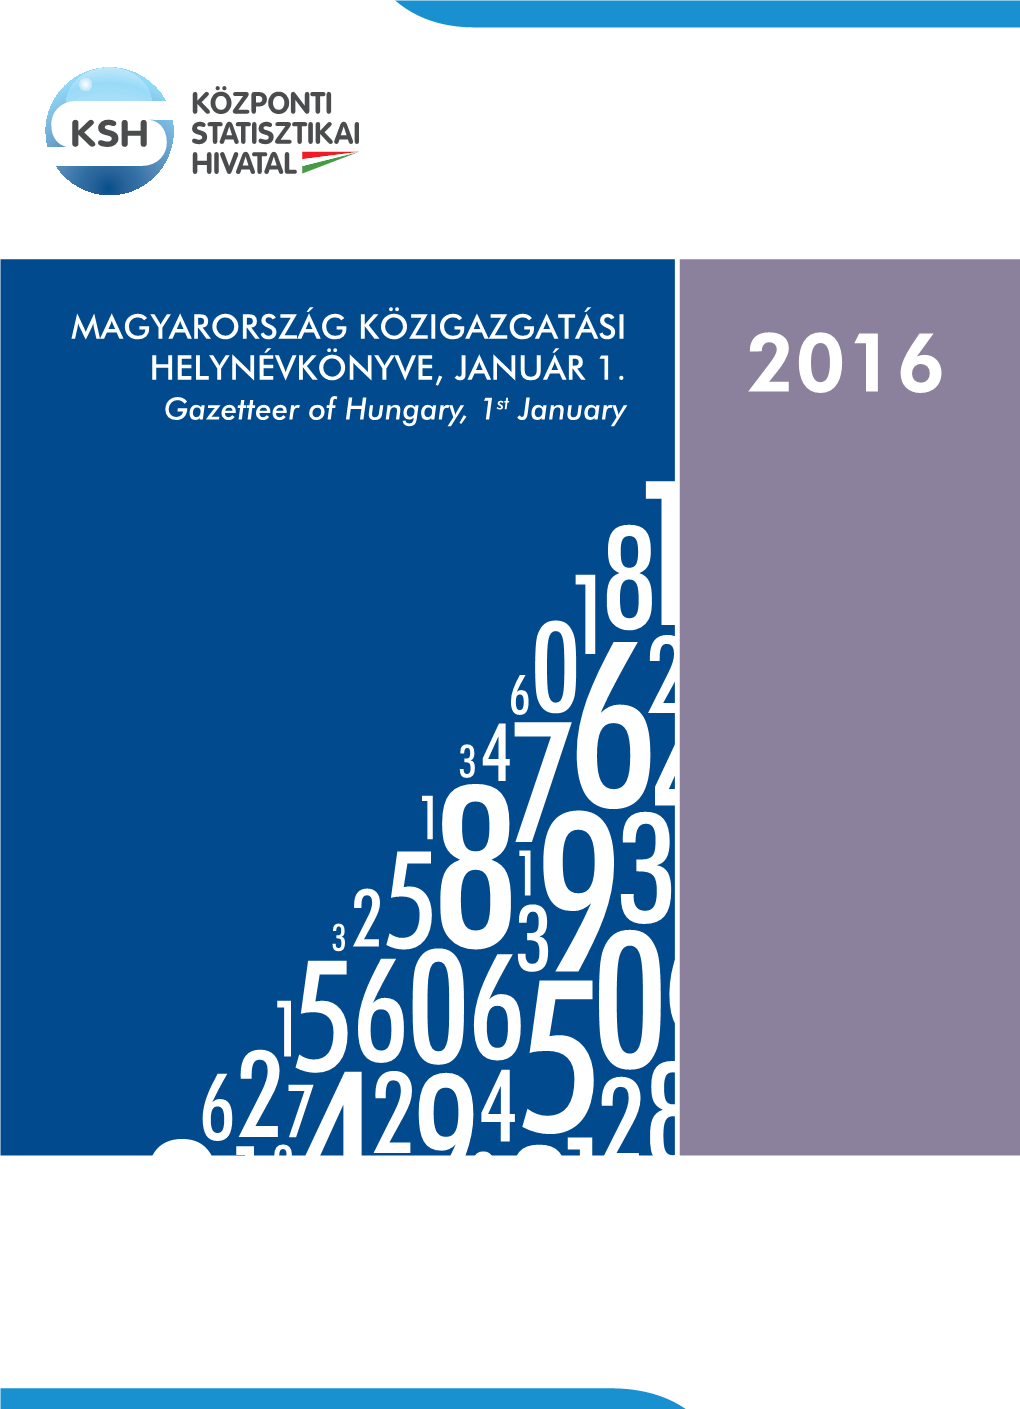 Magyarország Közigazgatási Helynévkönyve, 2016. Január 1